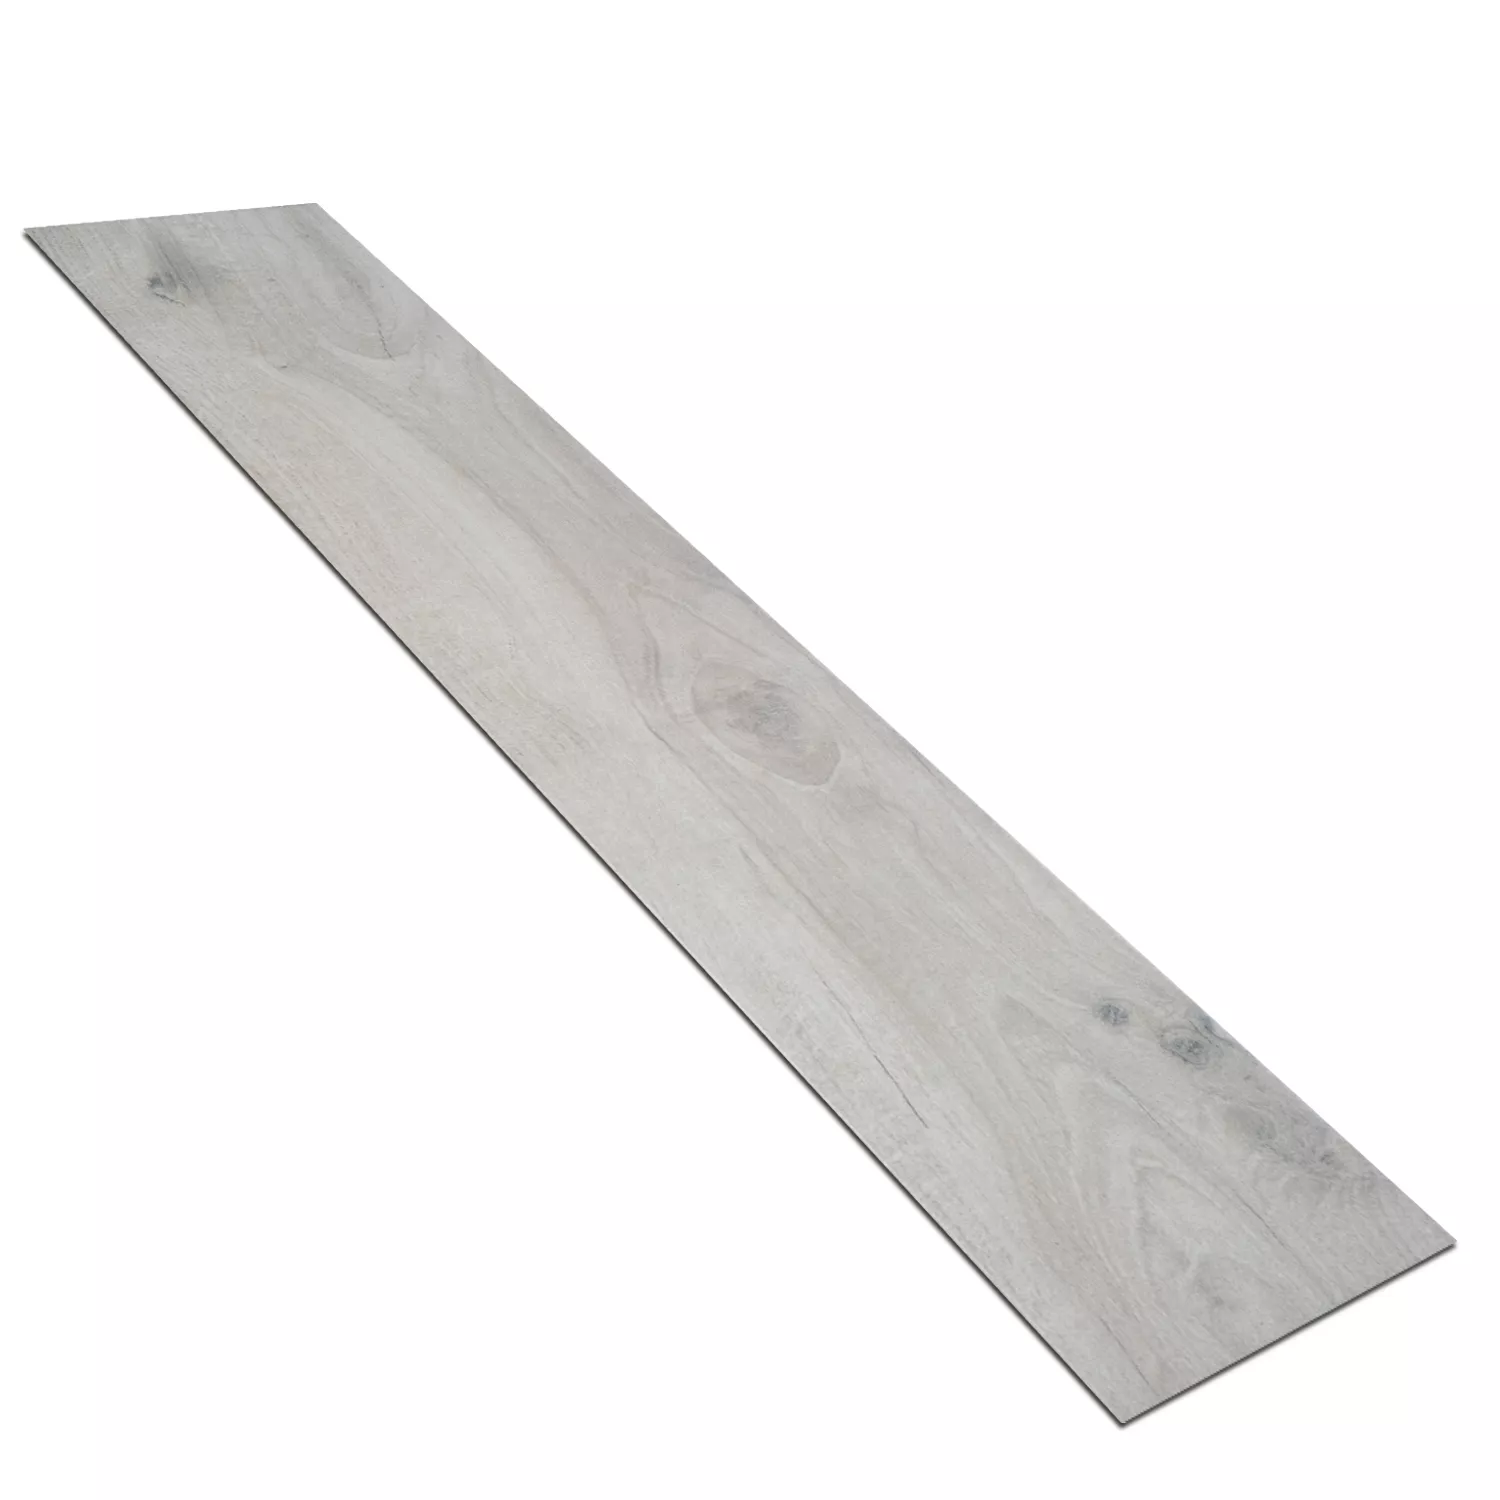 Sample Wood Optic Floor Tiles Palaimon Pearl 15x90cm